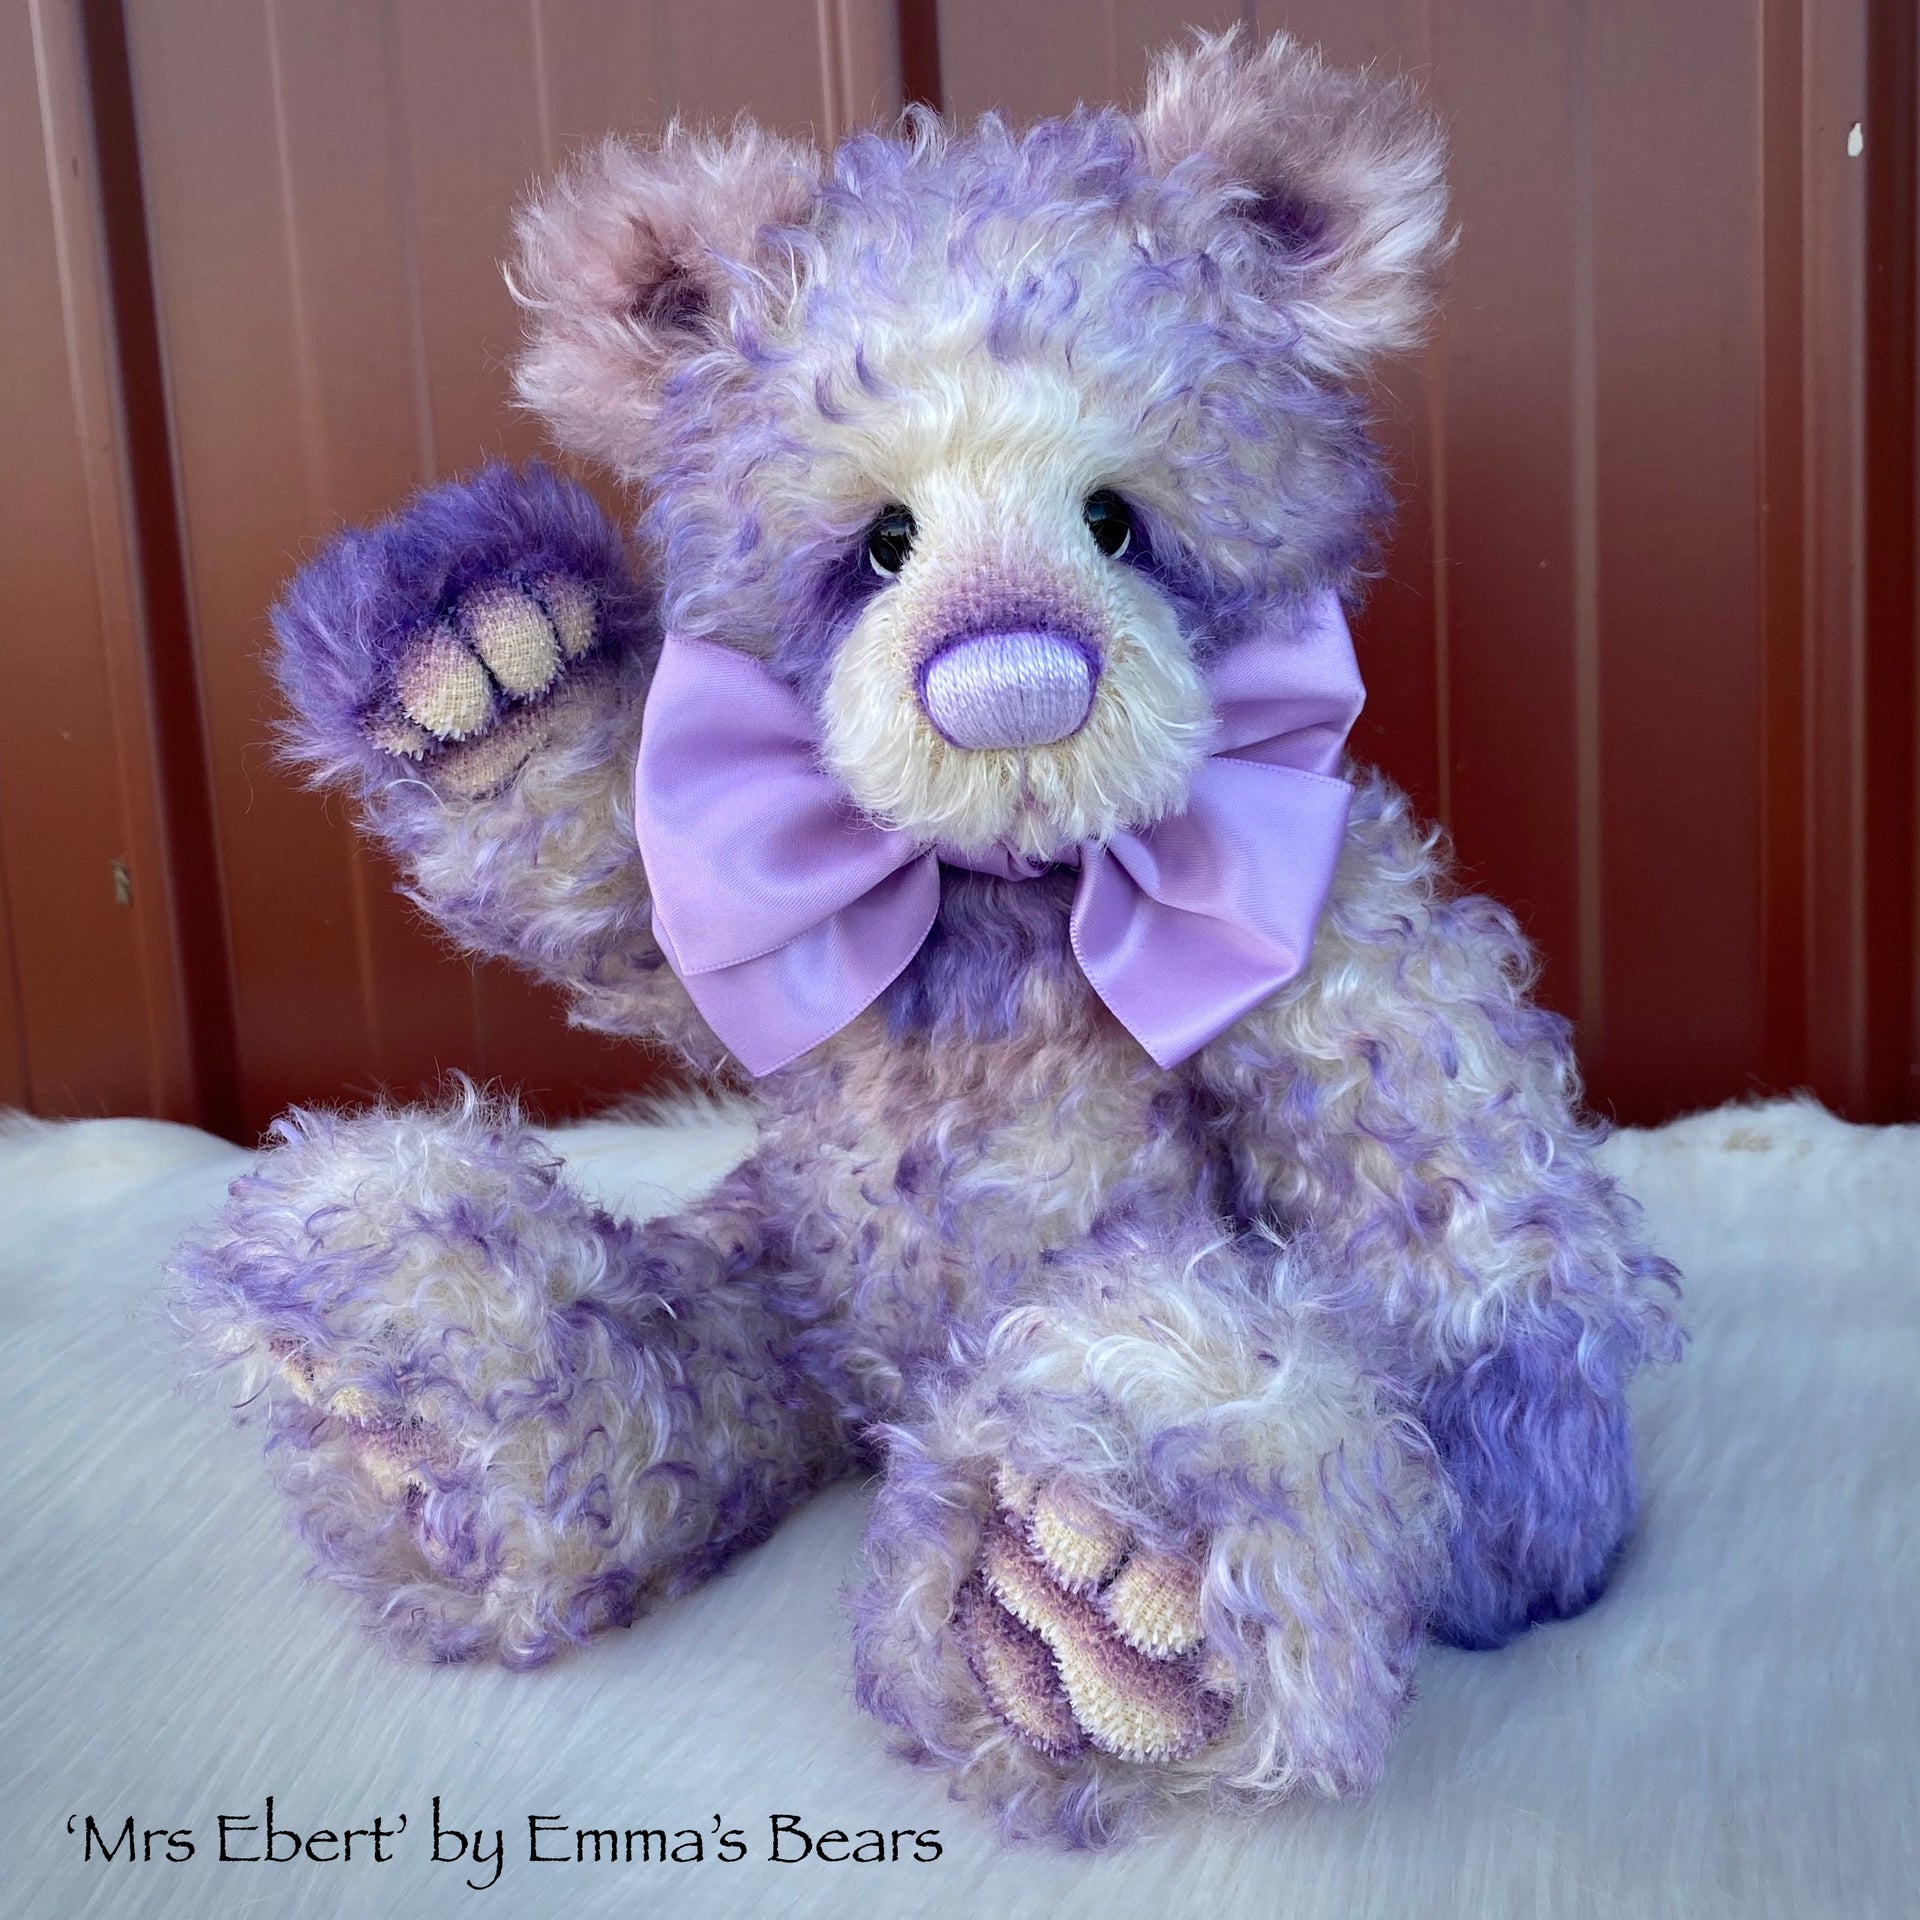 Mrs Ebert - 12" Mohair Artist Bear by Emma's Bears - OOAK